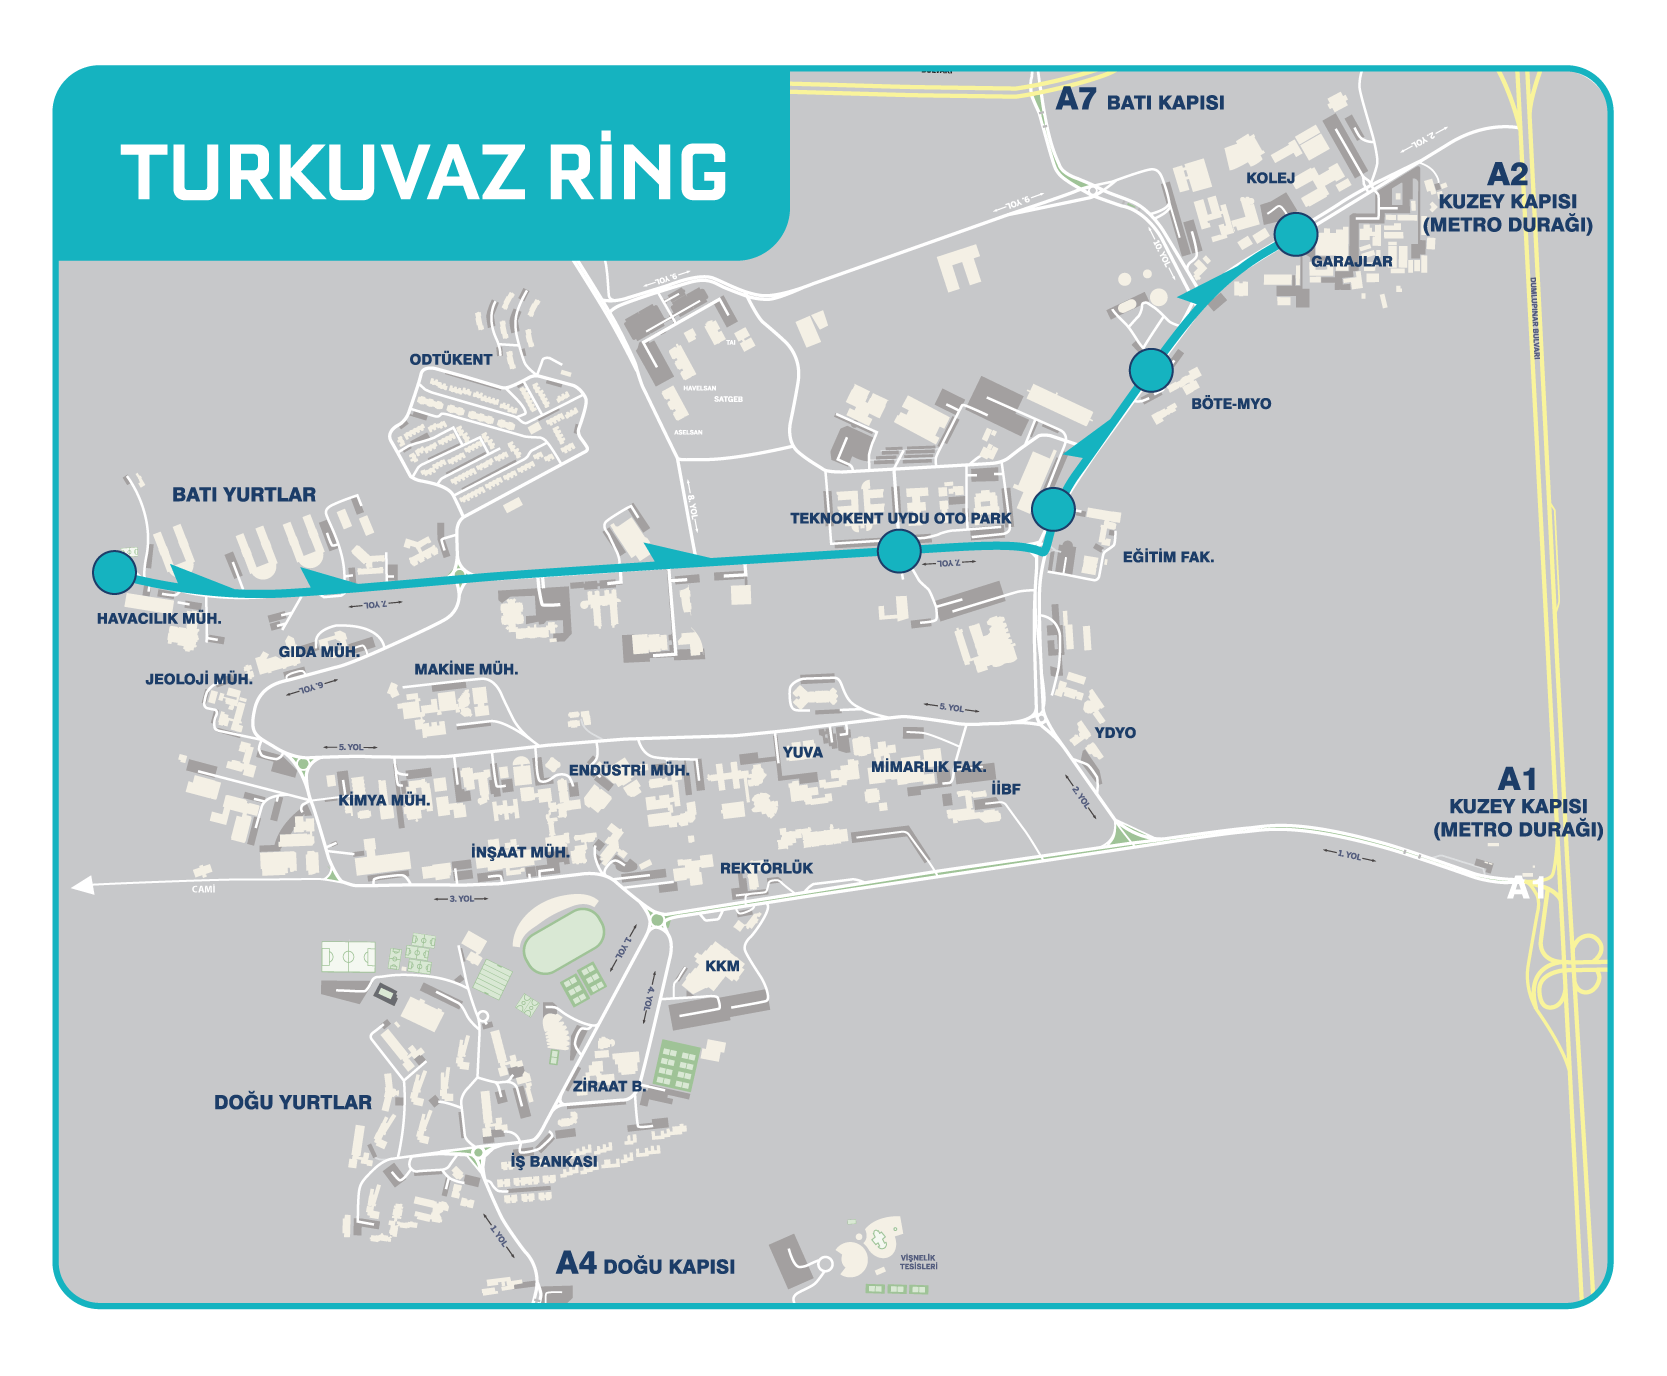 ODTU Turkuvaz Ring